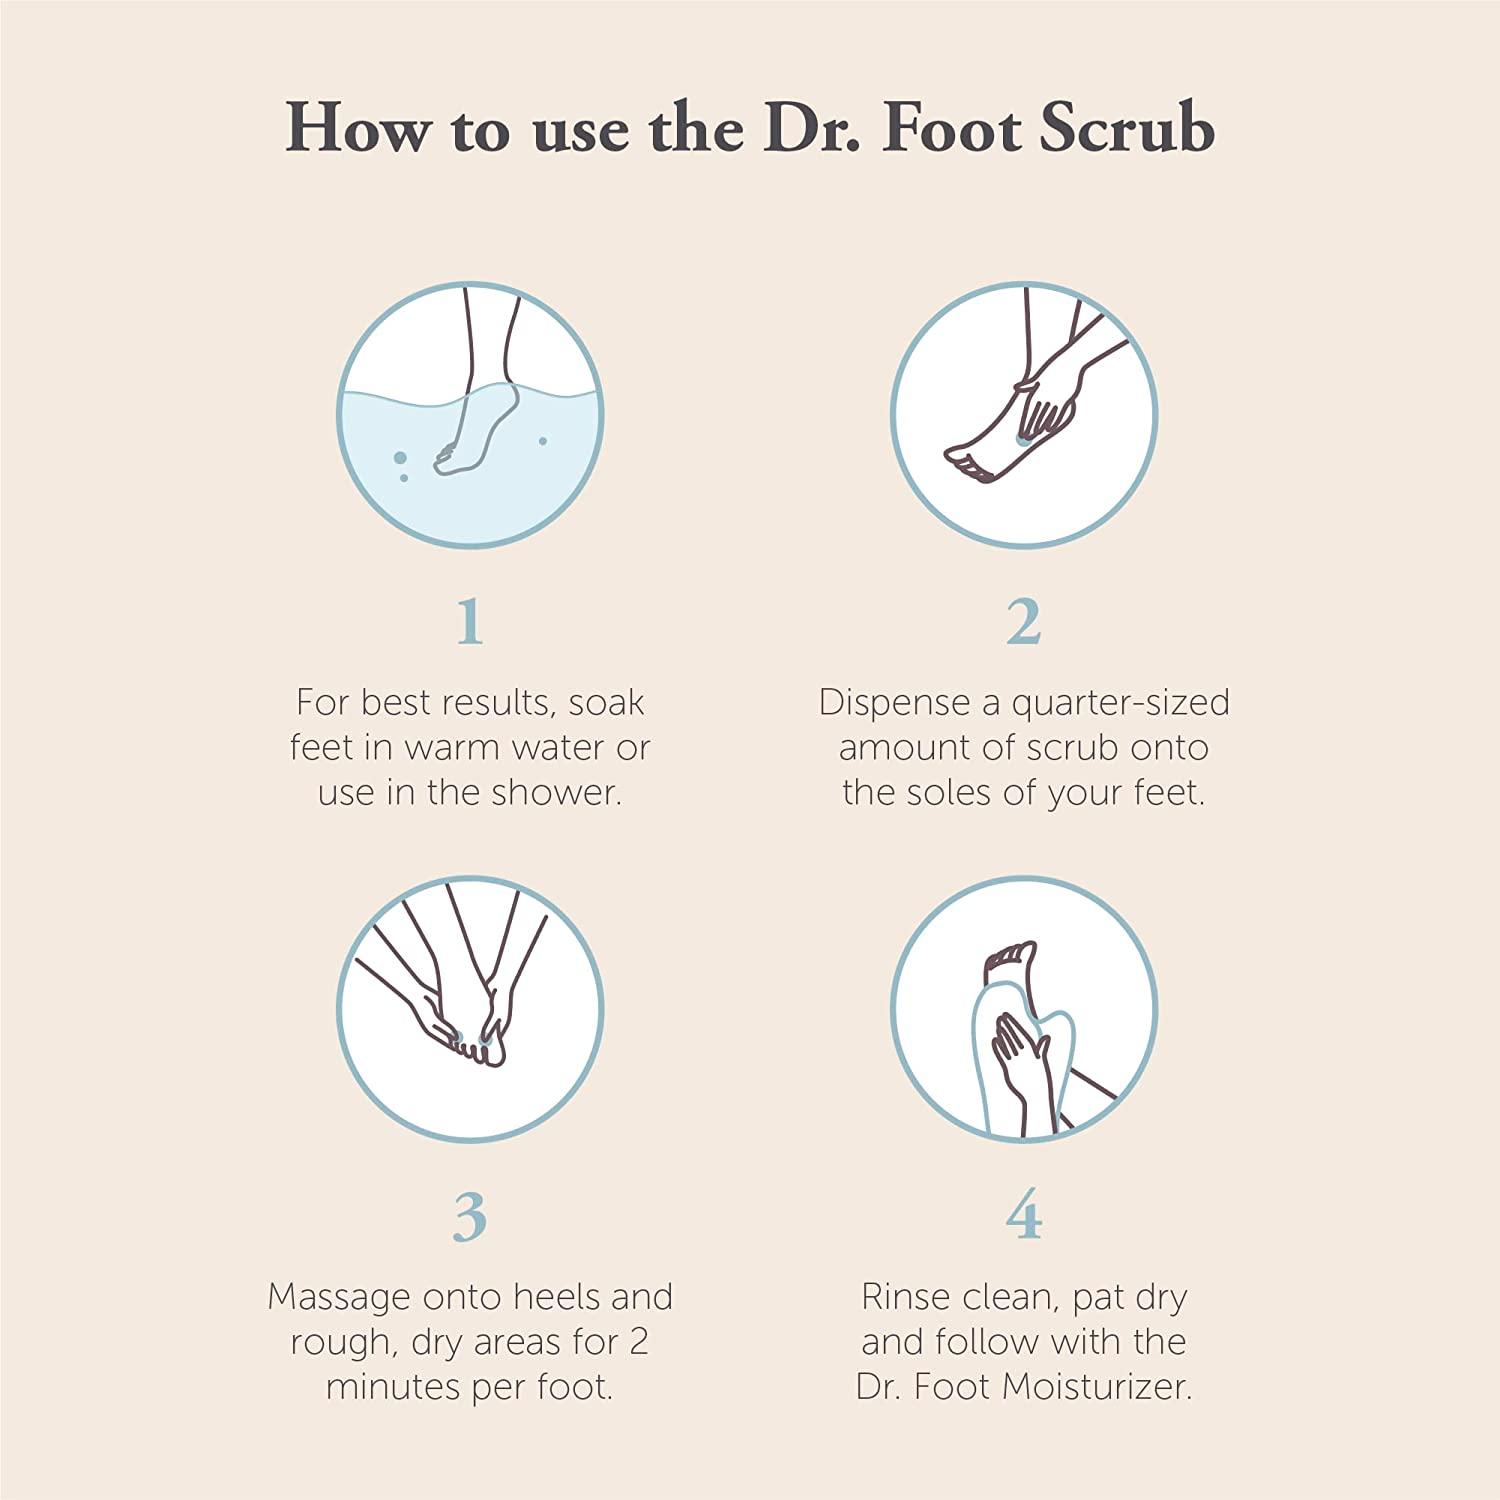 NatraCure Foot Scrub - Exfoliates and Reinvigorates Dry, Cracked Feet, Moisturizes Dry Skin - 4 oz (9921-4OZ)